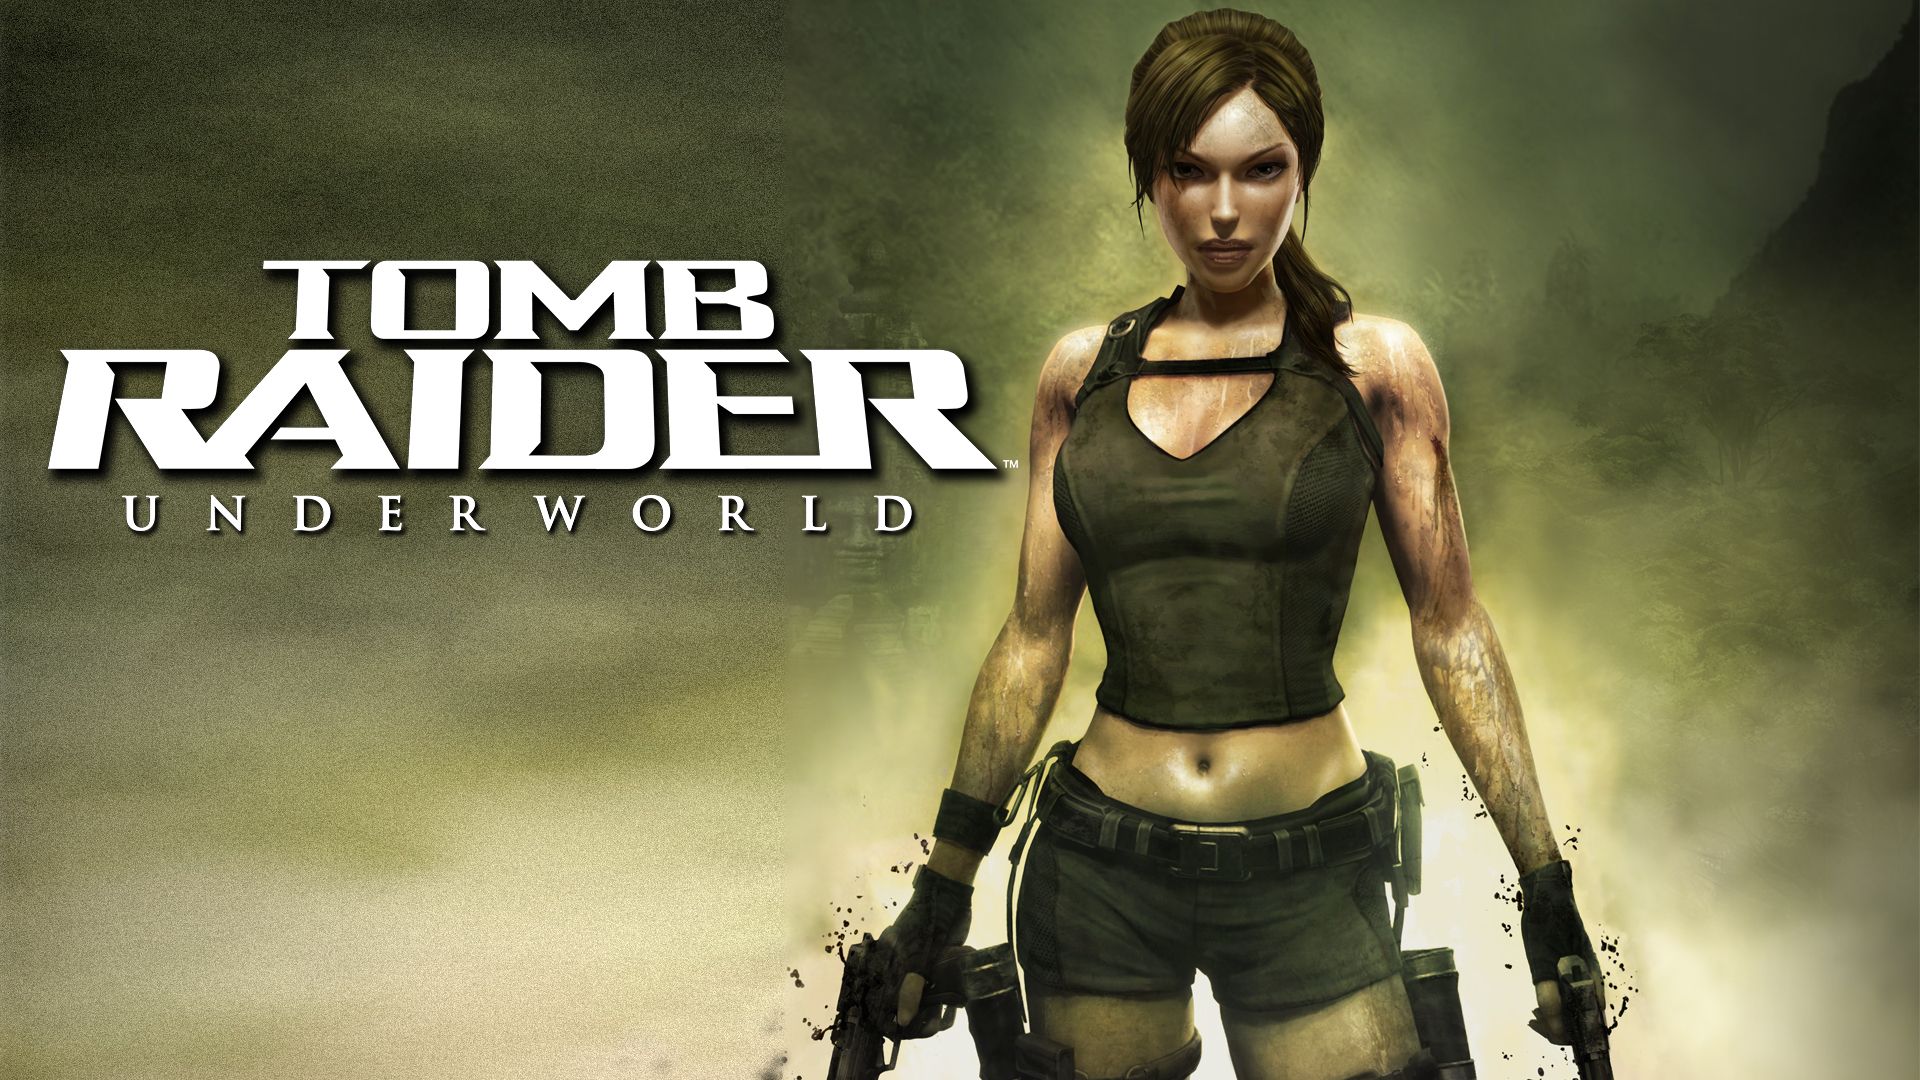 Прохождение игры Tomb Raider: Underworld # 10. HD - Full 1080p. (Русская версия игры)